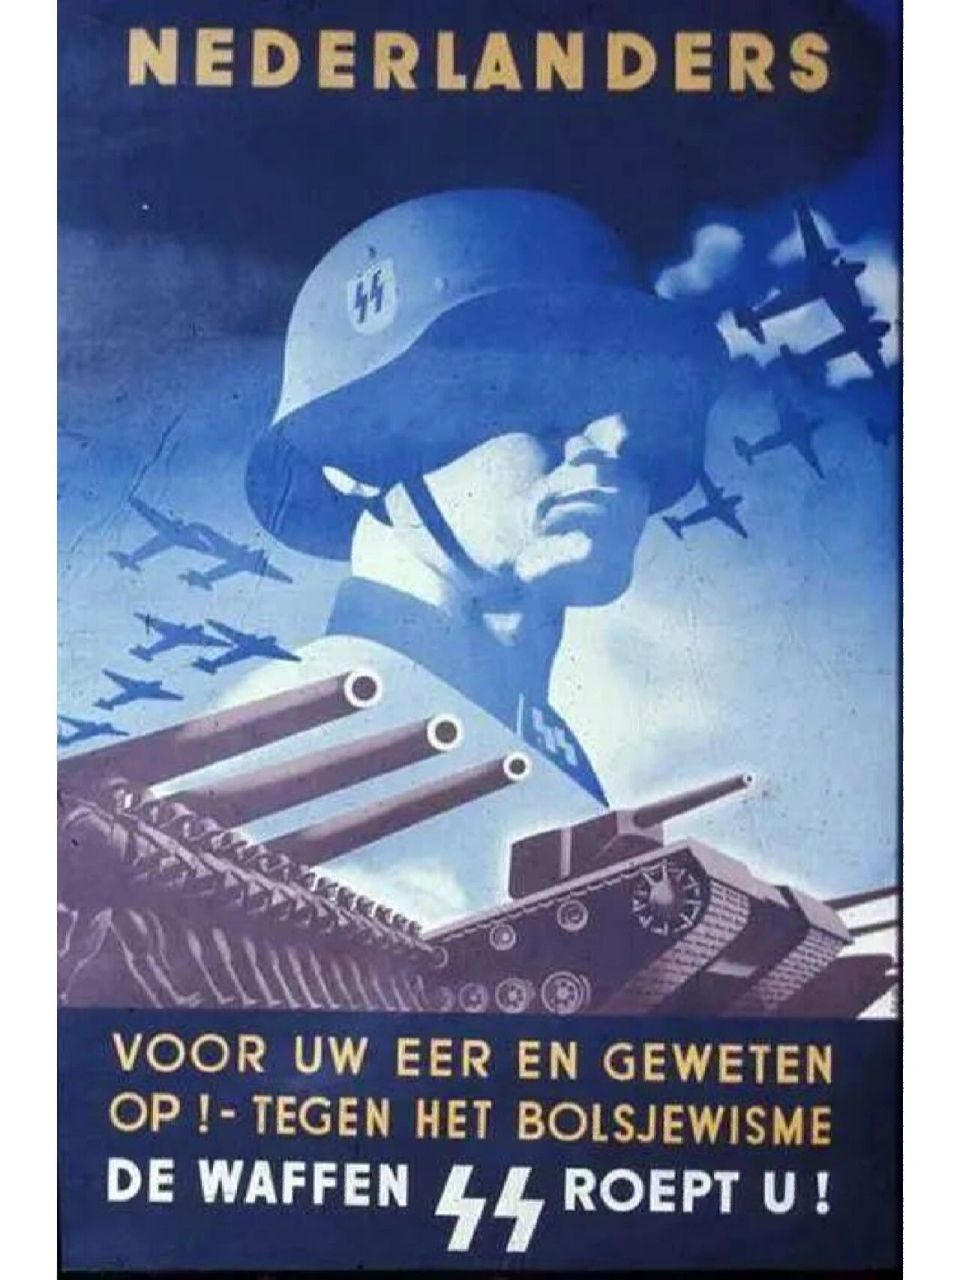 二战徳国在荷兰的征兵广告